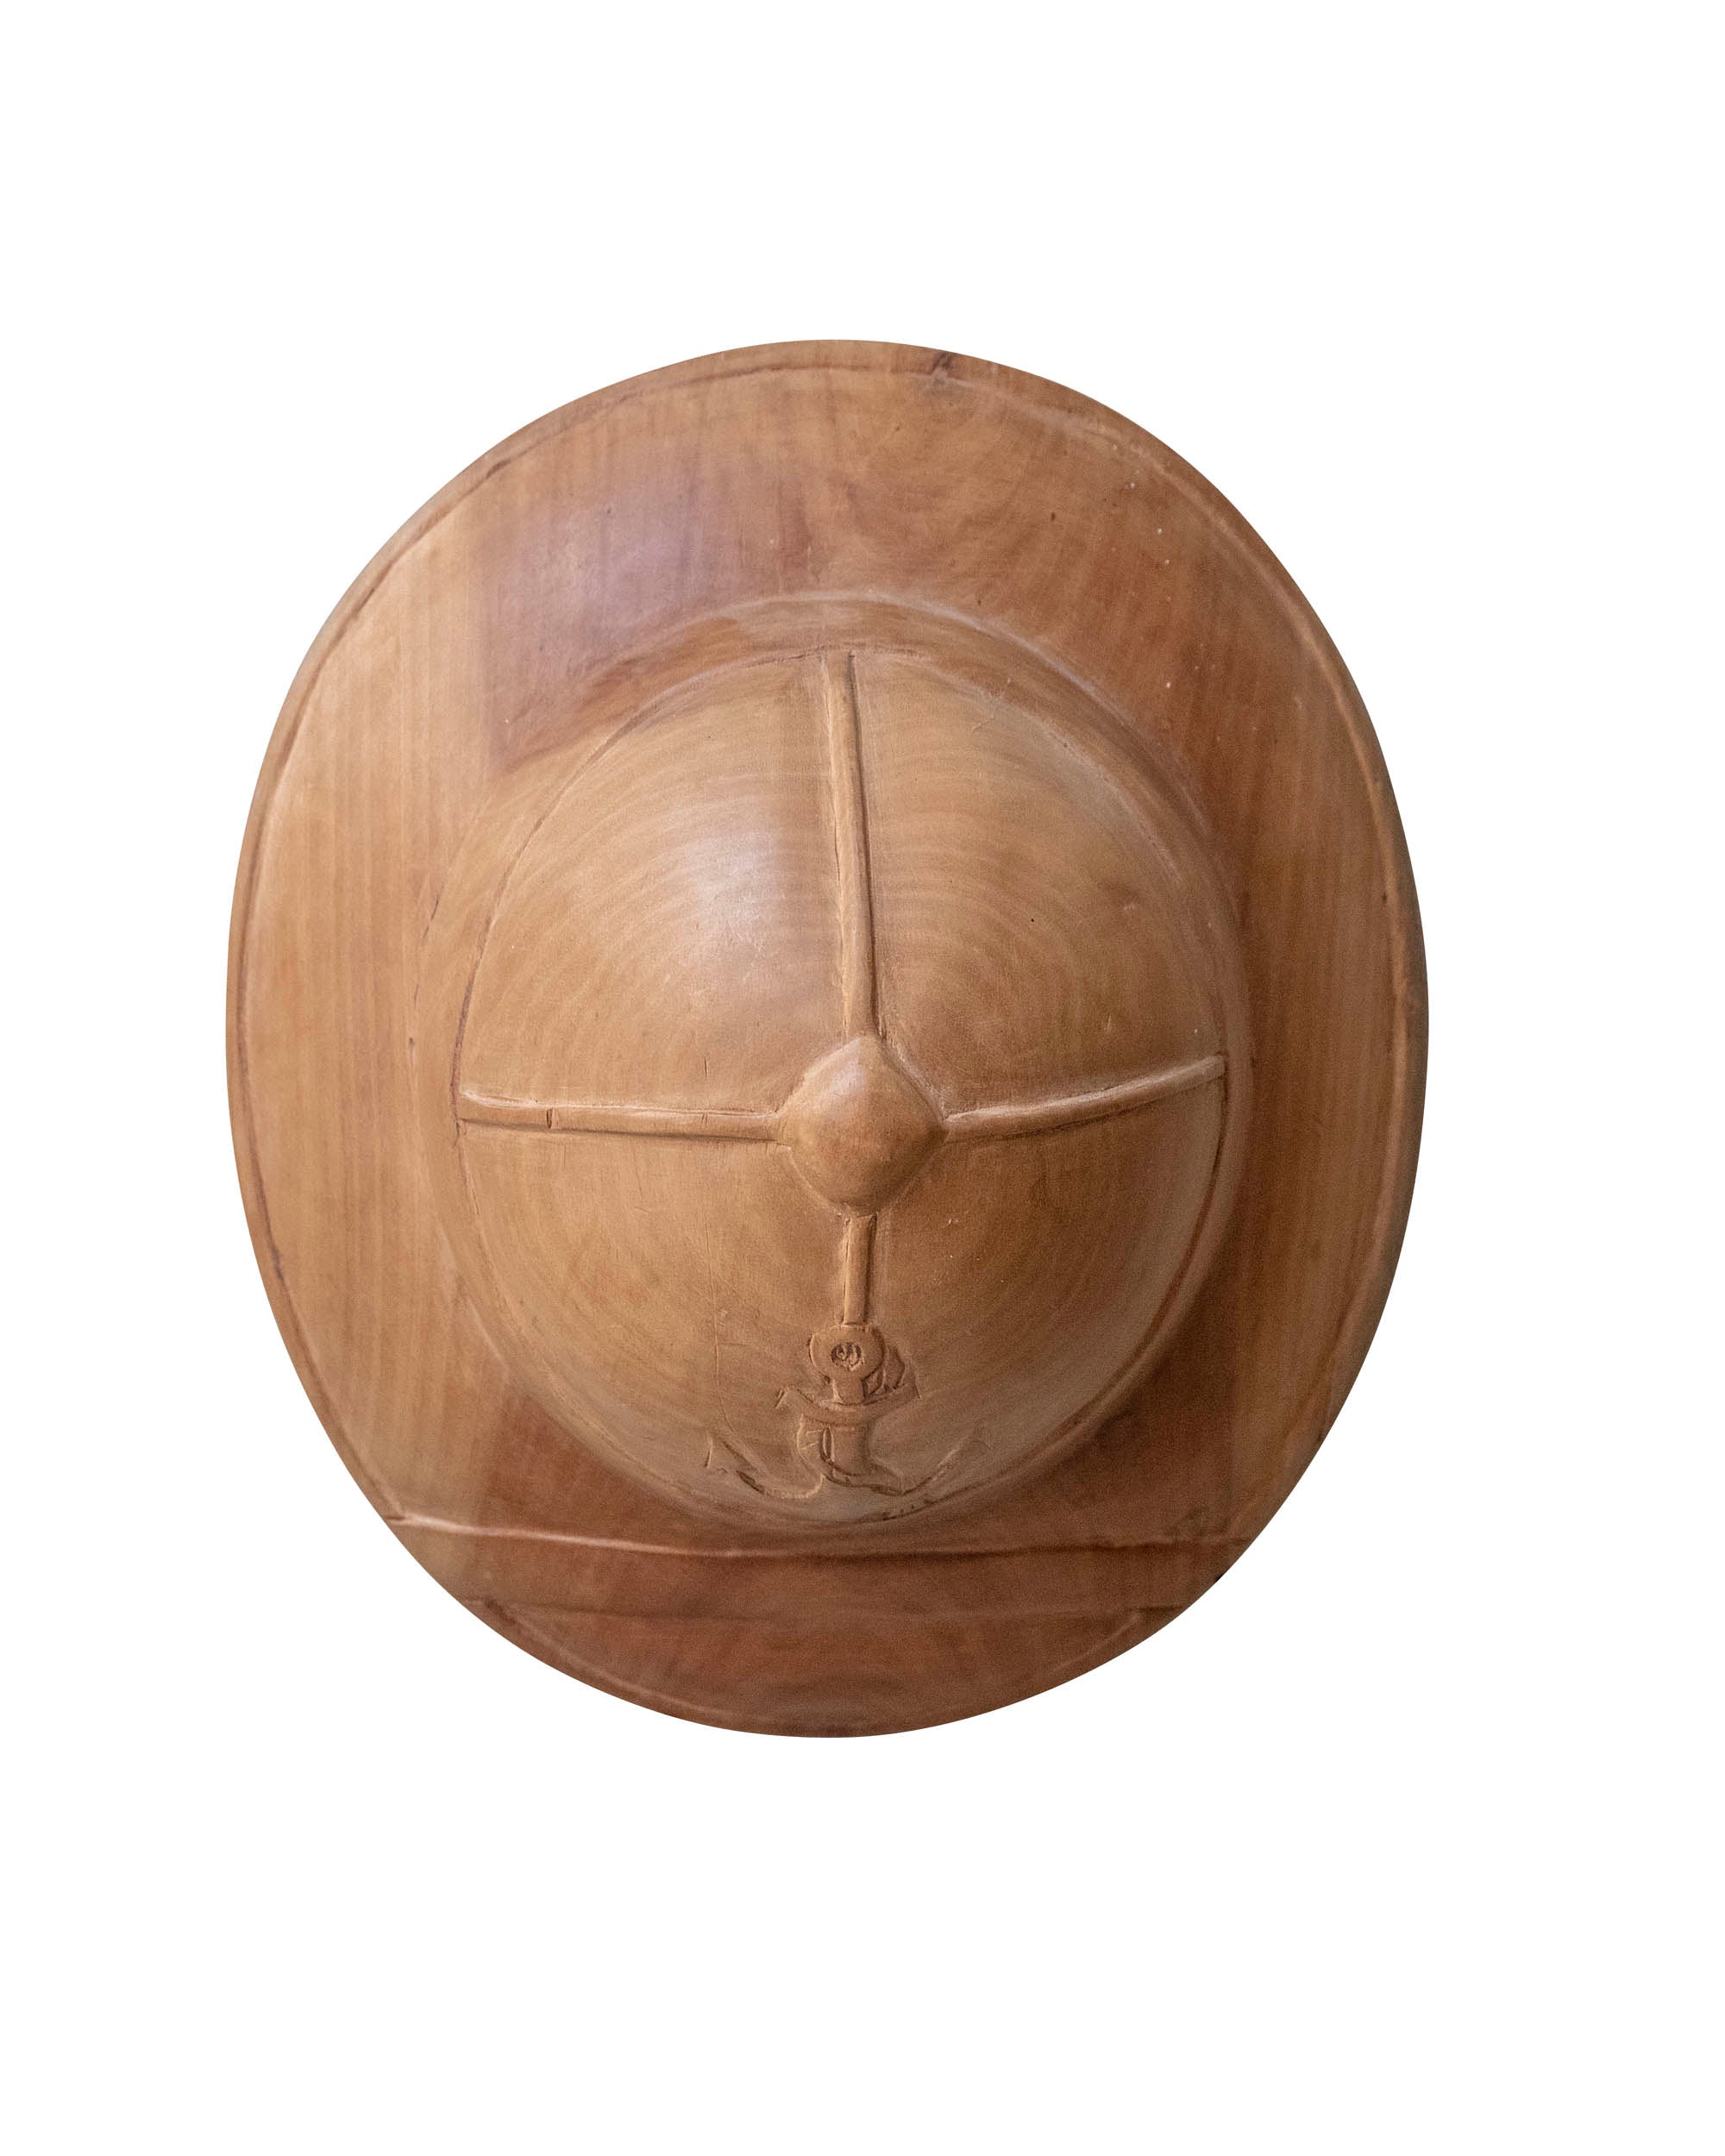 Casco de madera con emblema marino tallado a mano